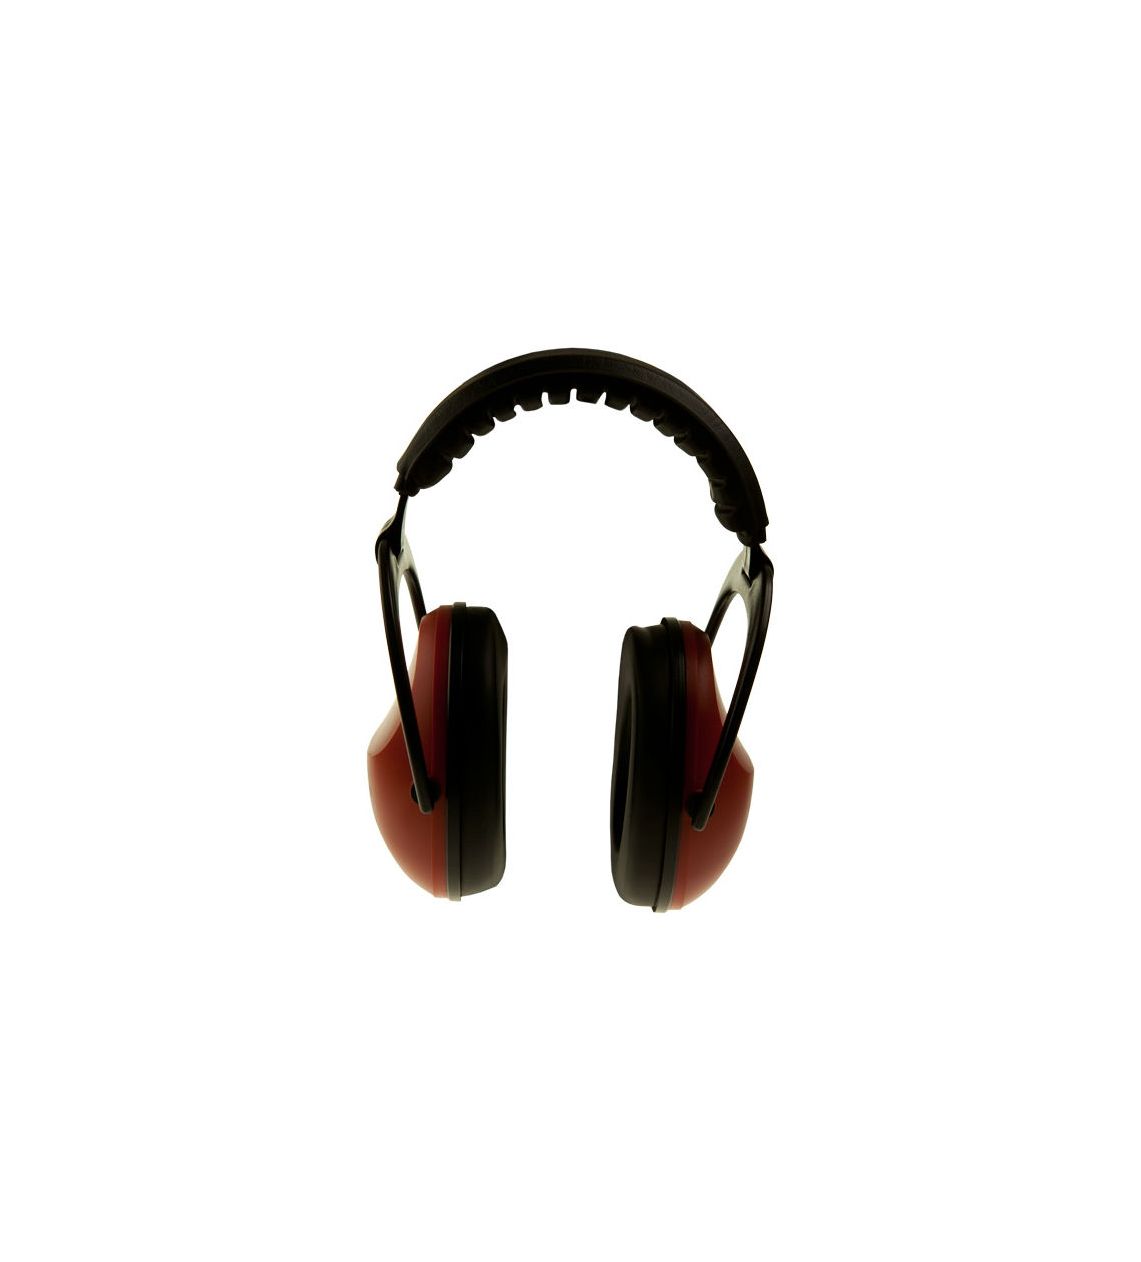 Arton 1000 Pocket. Zusammenklappbares Gehörschutzgerät. SNR-28db. Farbe rot.